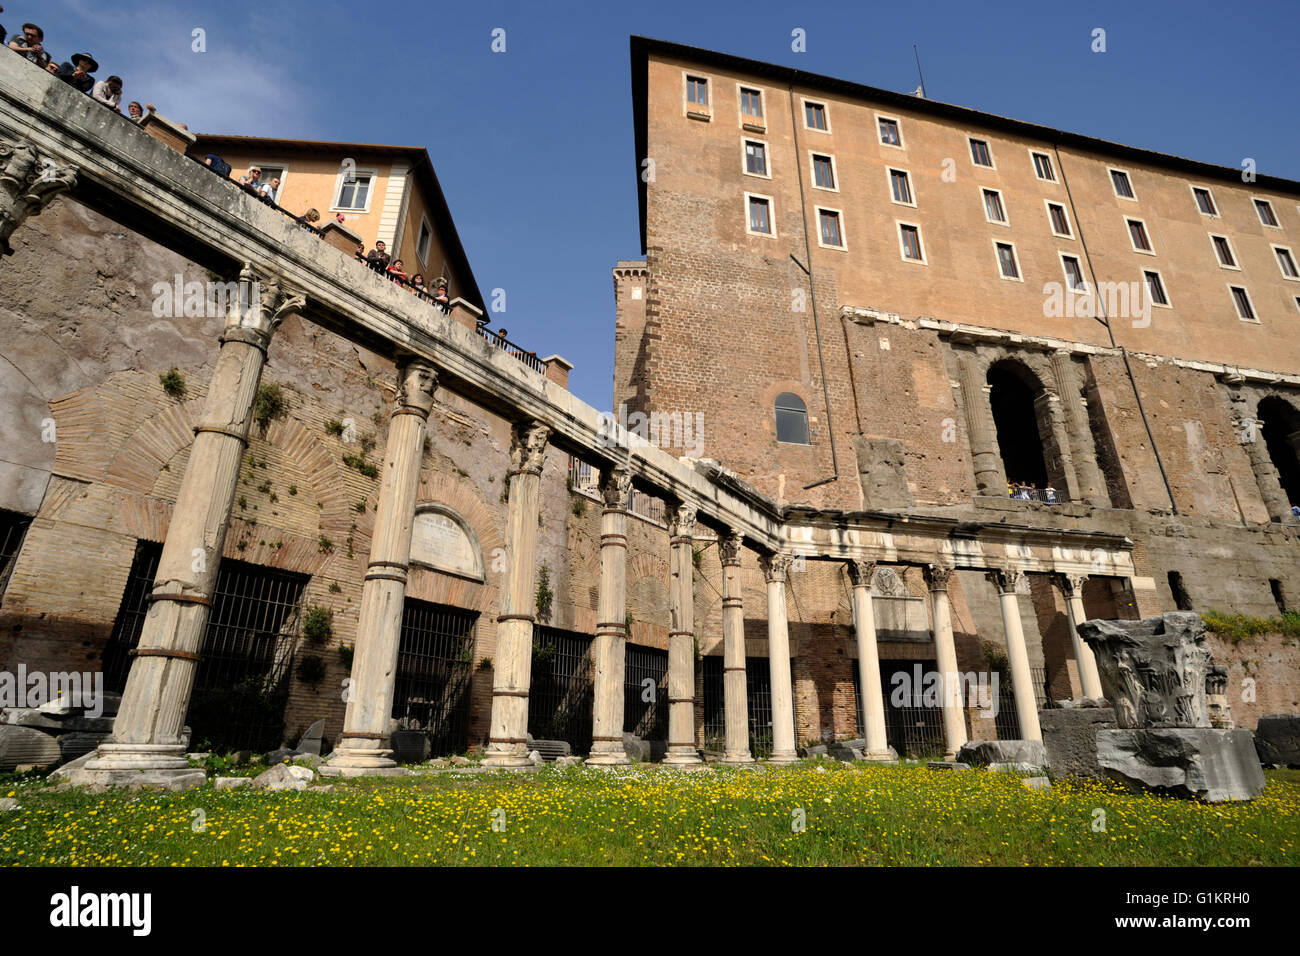 Italy, Rome, Roman Forum, Portico degli Dei Consenti (Portico of the Harmonious Gods) and Tabularium on the Capitoline Hill Stock Photo